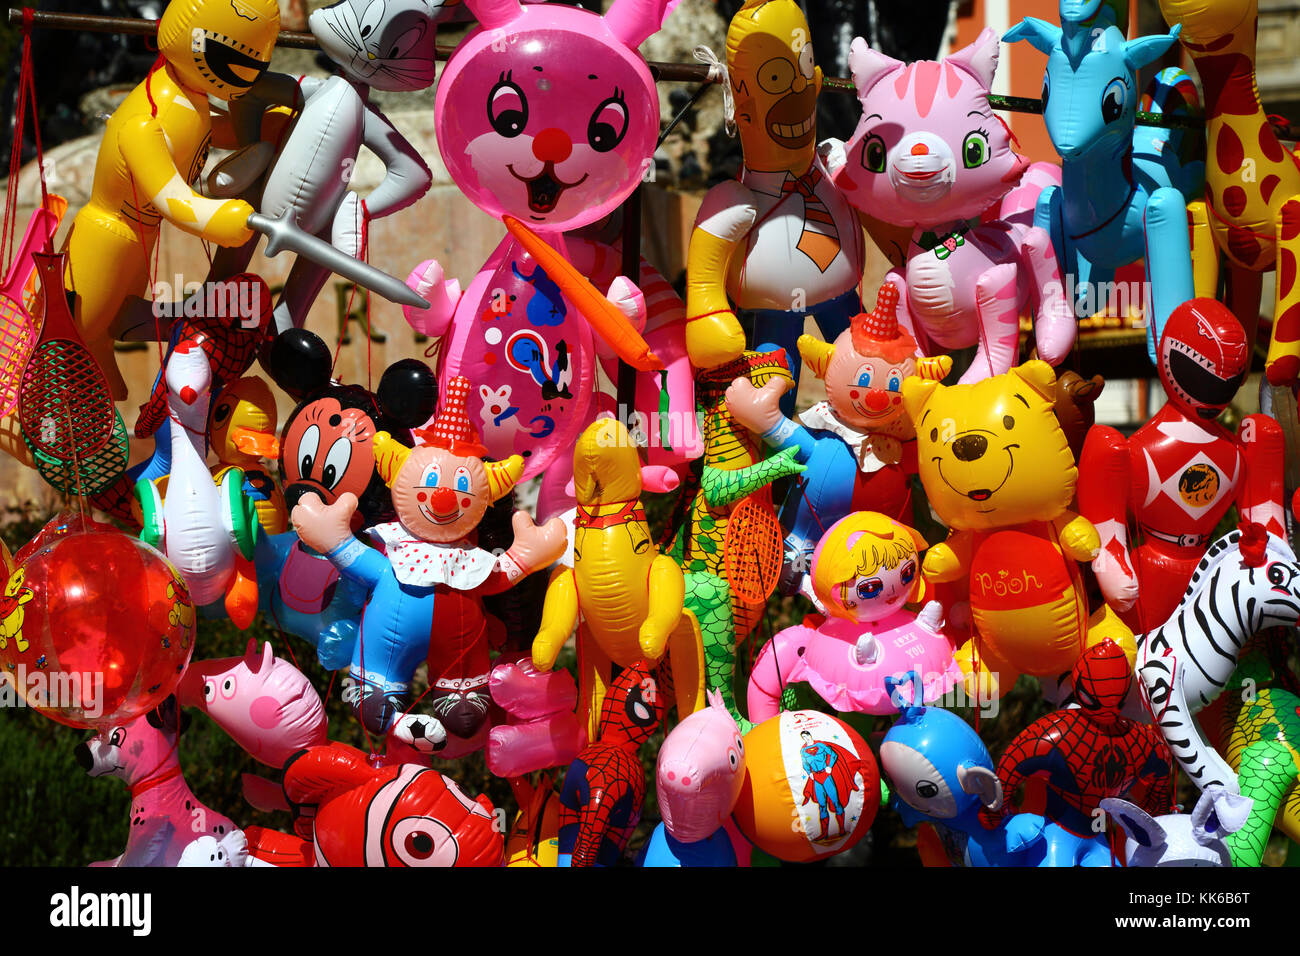 Dettaglio di giocattoli gonfiabili per bambini in vendita su stalla di strada, la Paz, Bolivia Foto Stock